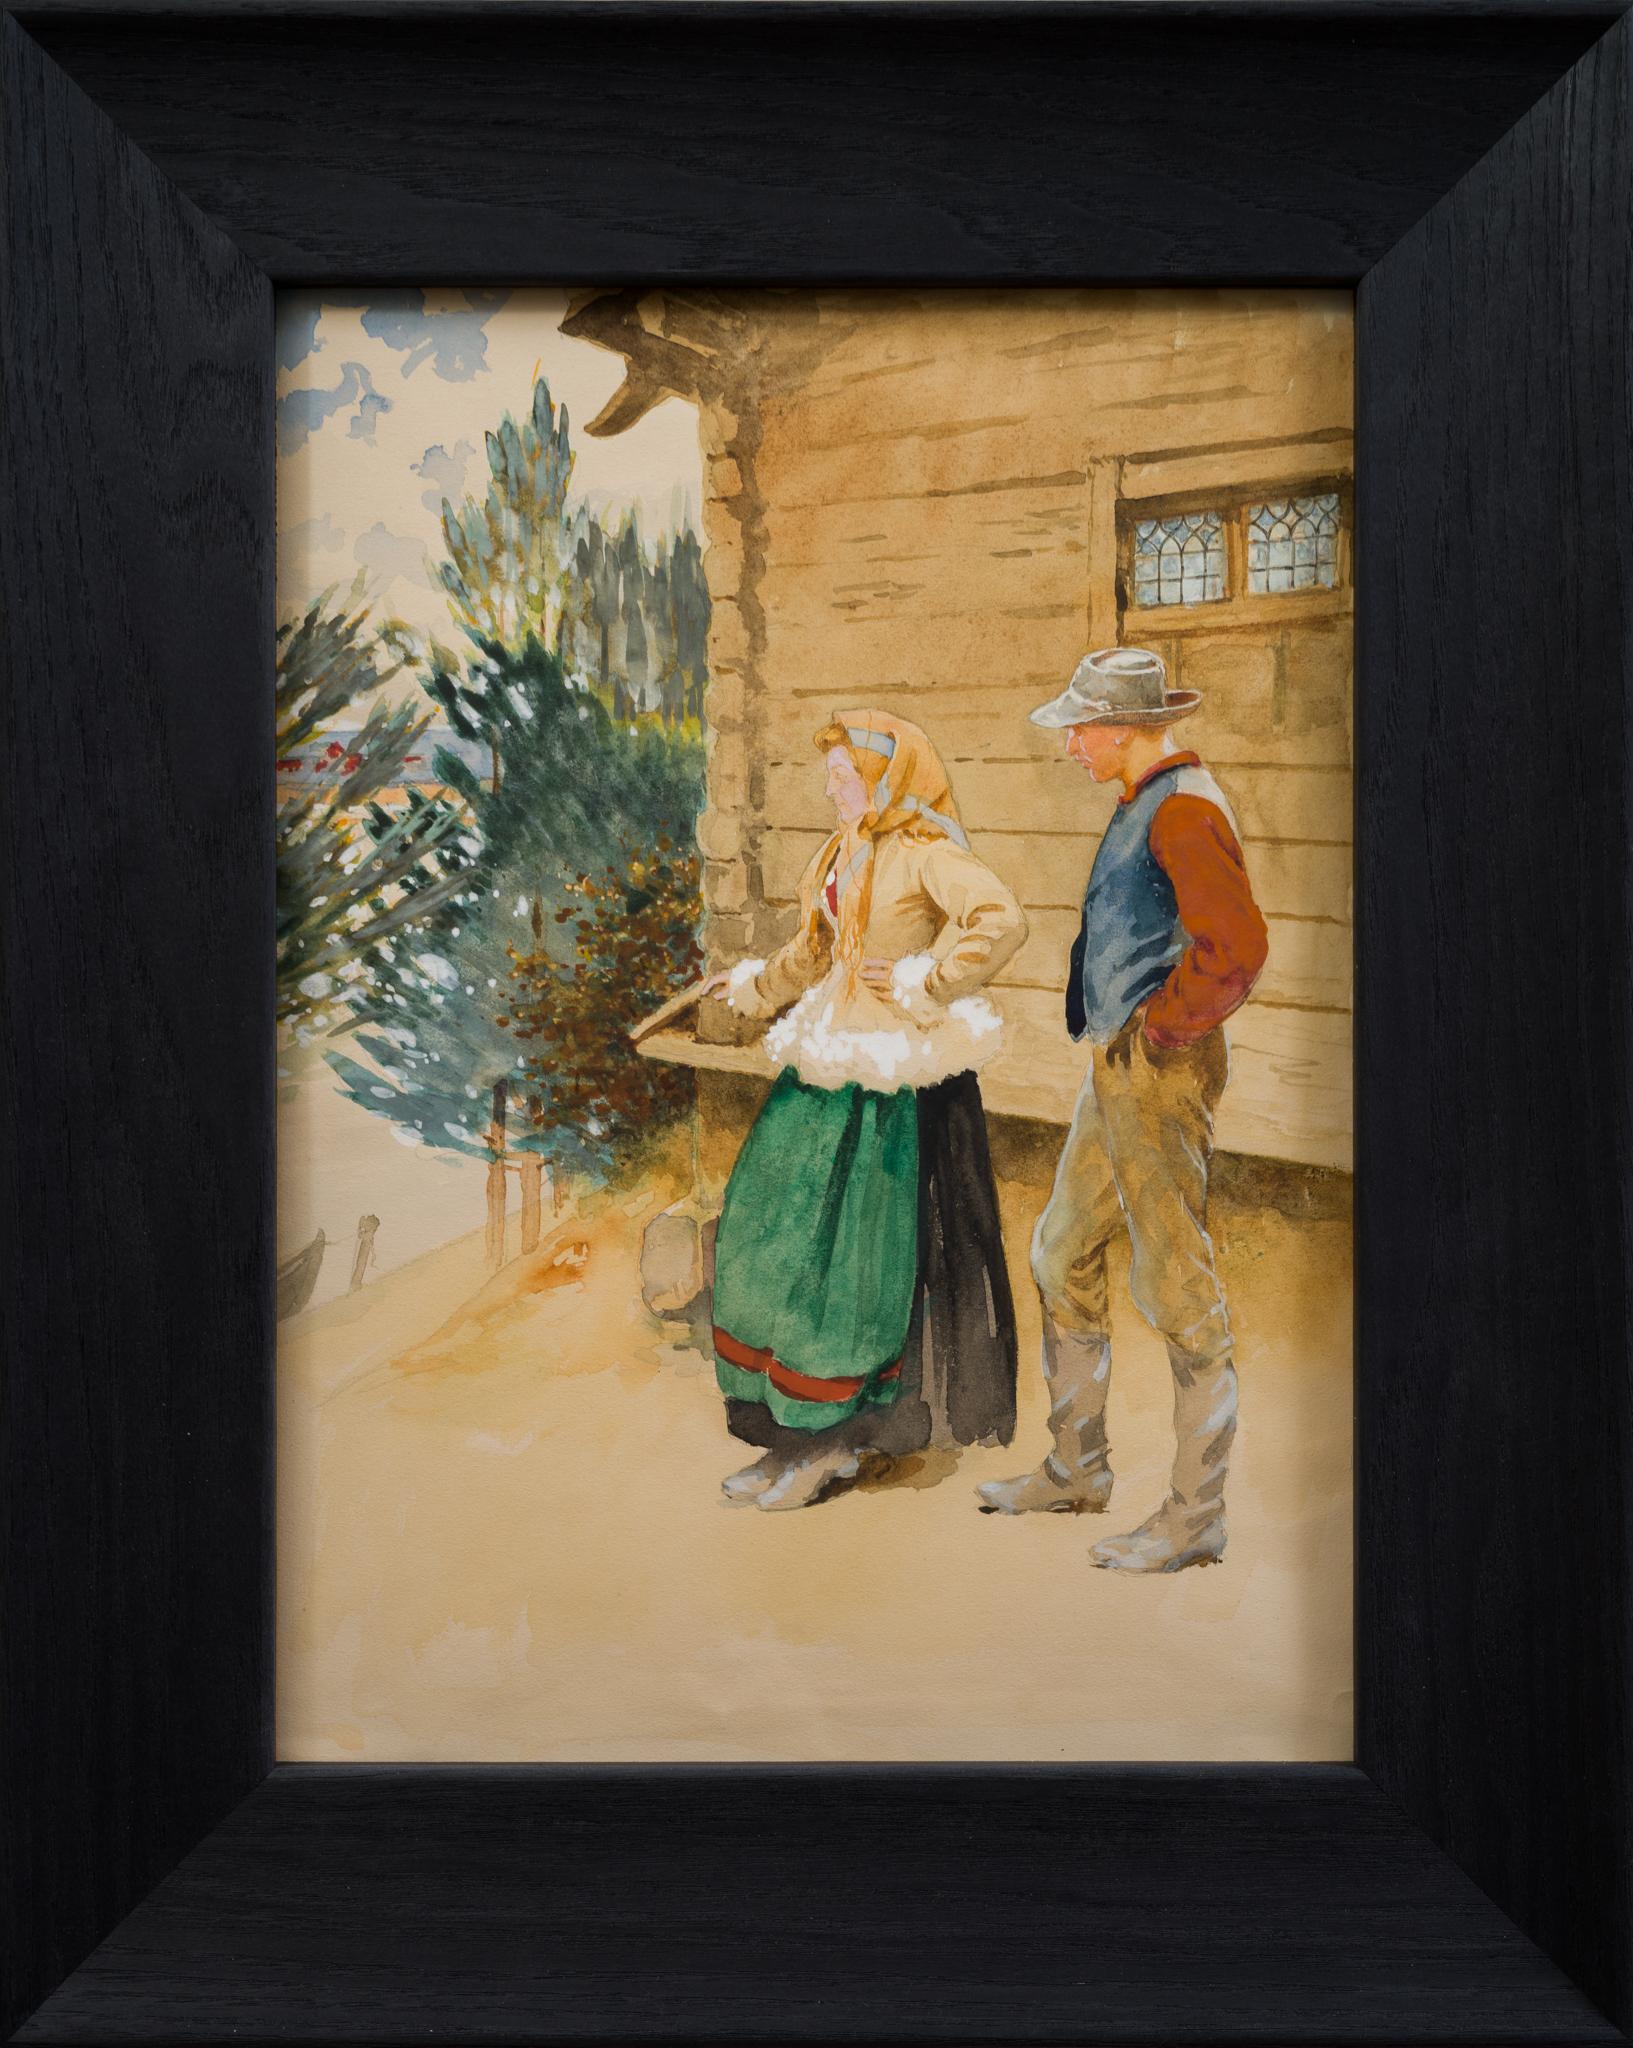 Contemplation de la sérénité rurale dans l'aquarelle de Hagborg